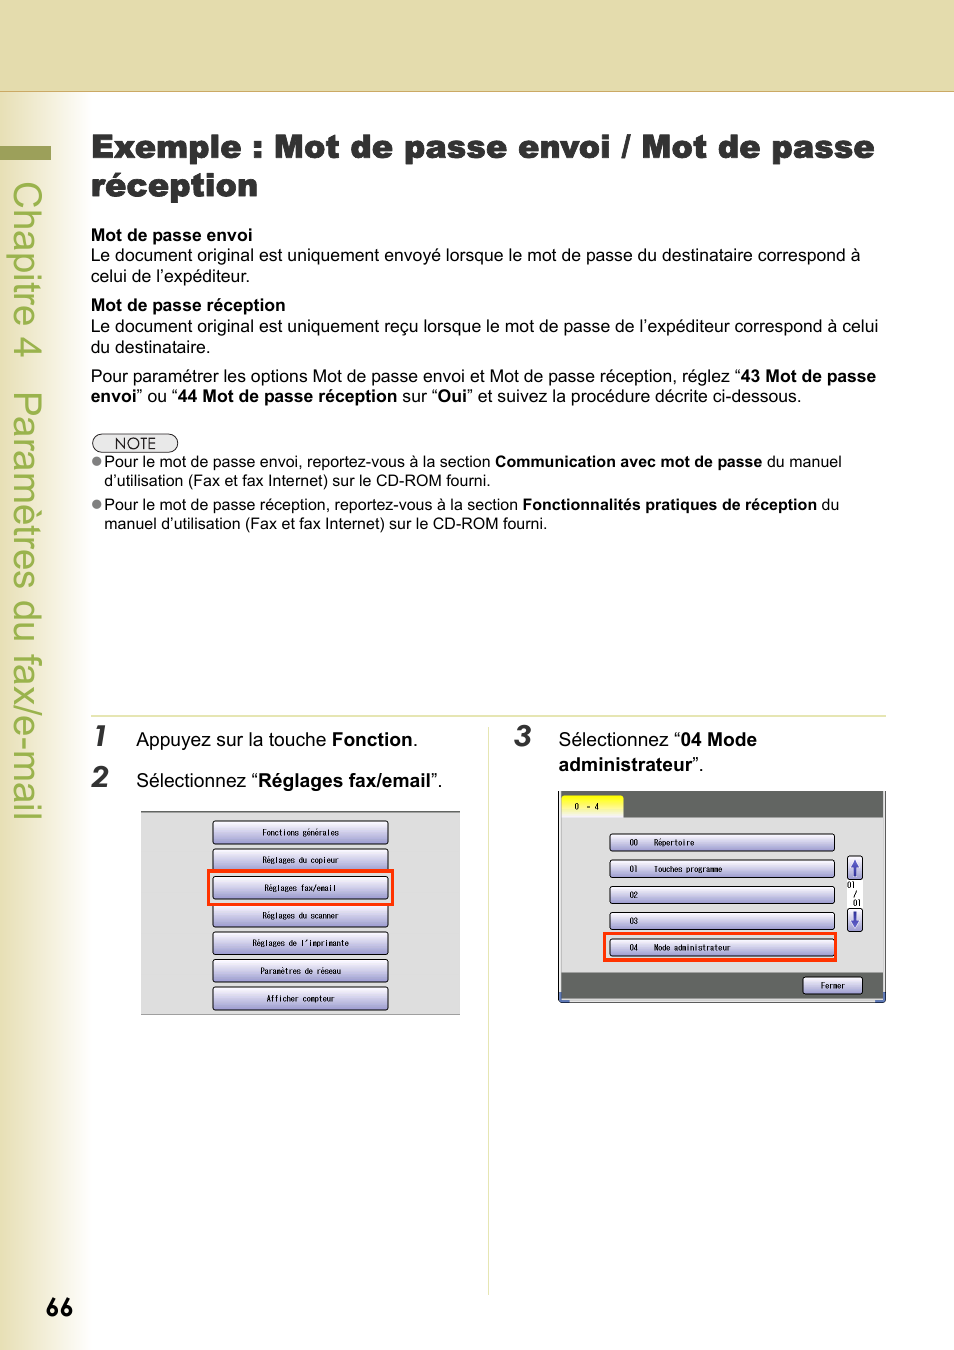 Chapitre 4 paramètres du fax/e-mail | Panasonic DPC406 Manuel d'utilisation | Page 66 / 112